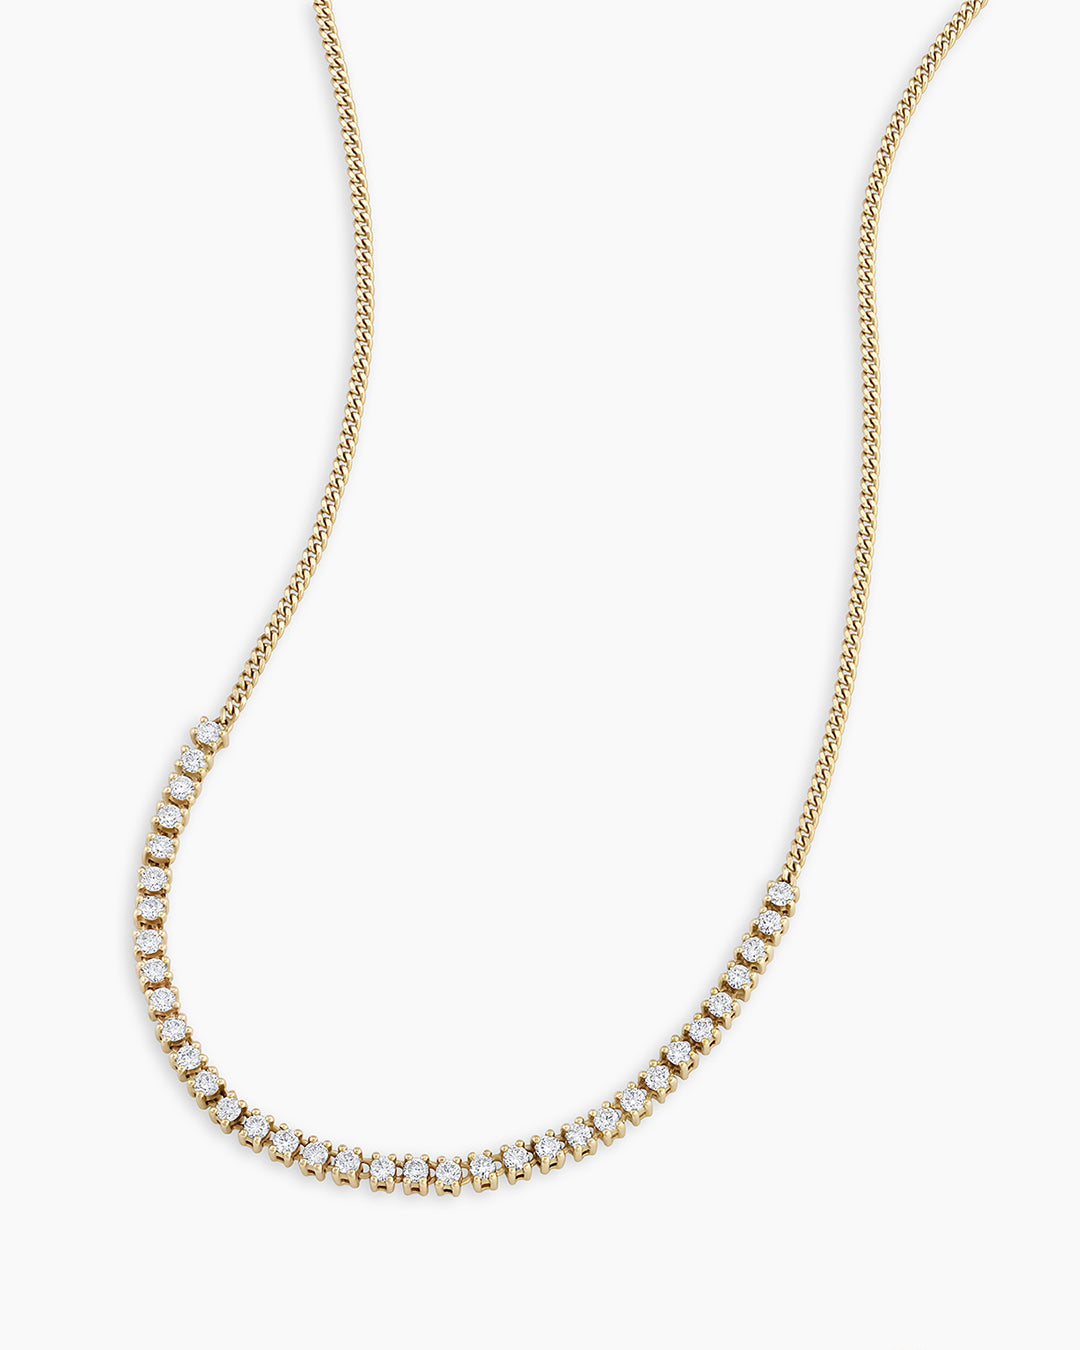 7 carat Diamond Tennis Necklace – Meira T Boutique